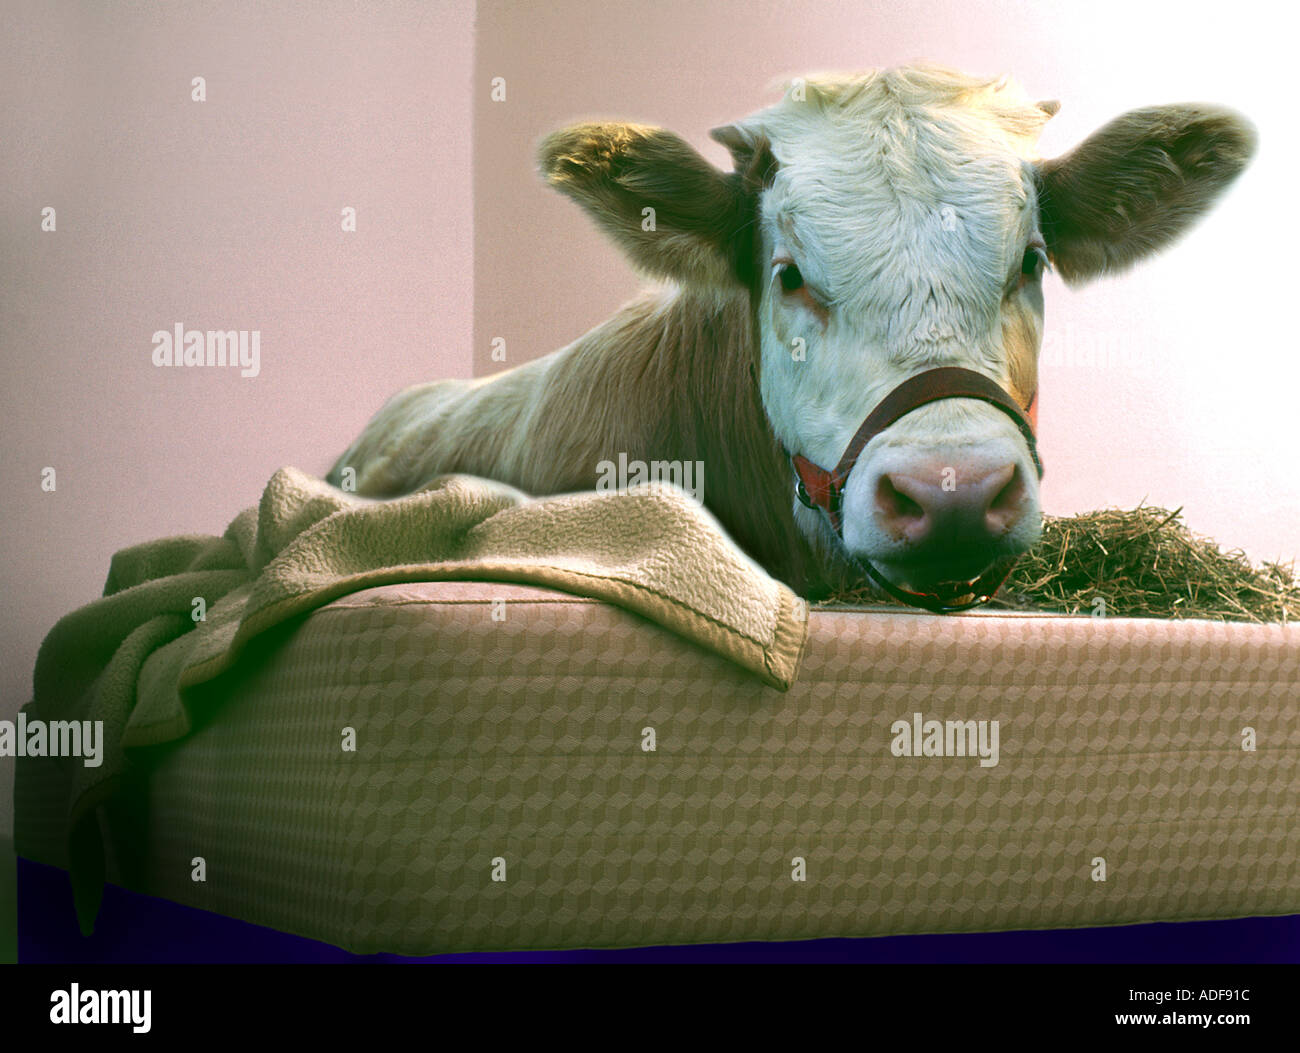 cow calf is laying in a bed humour joke fun funny mattress futon humour  joke fun funny animal Stock Photo - Alamy